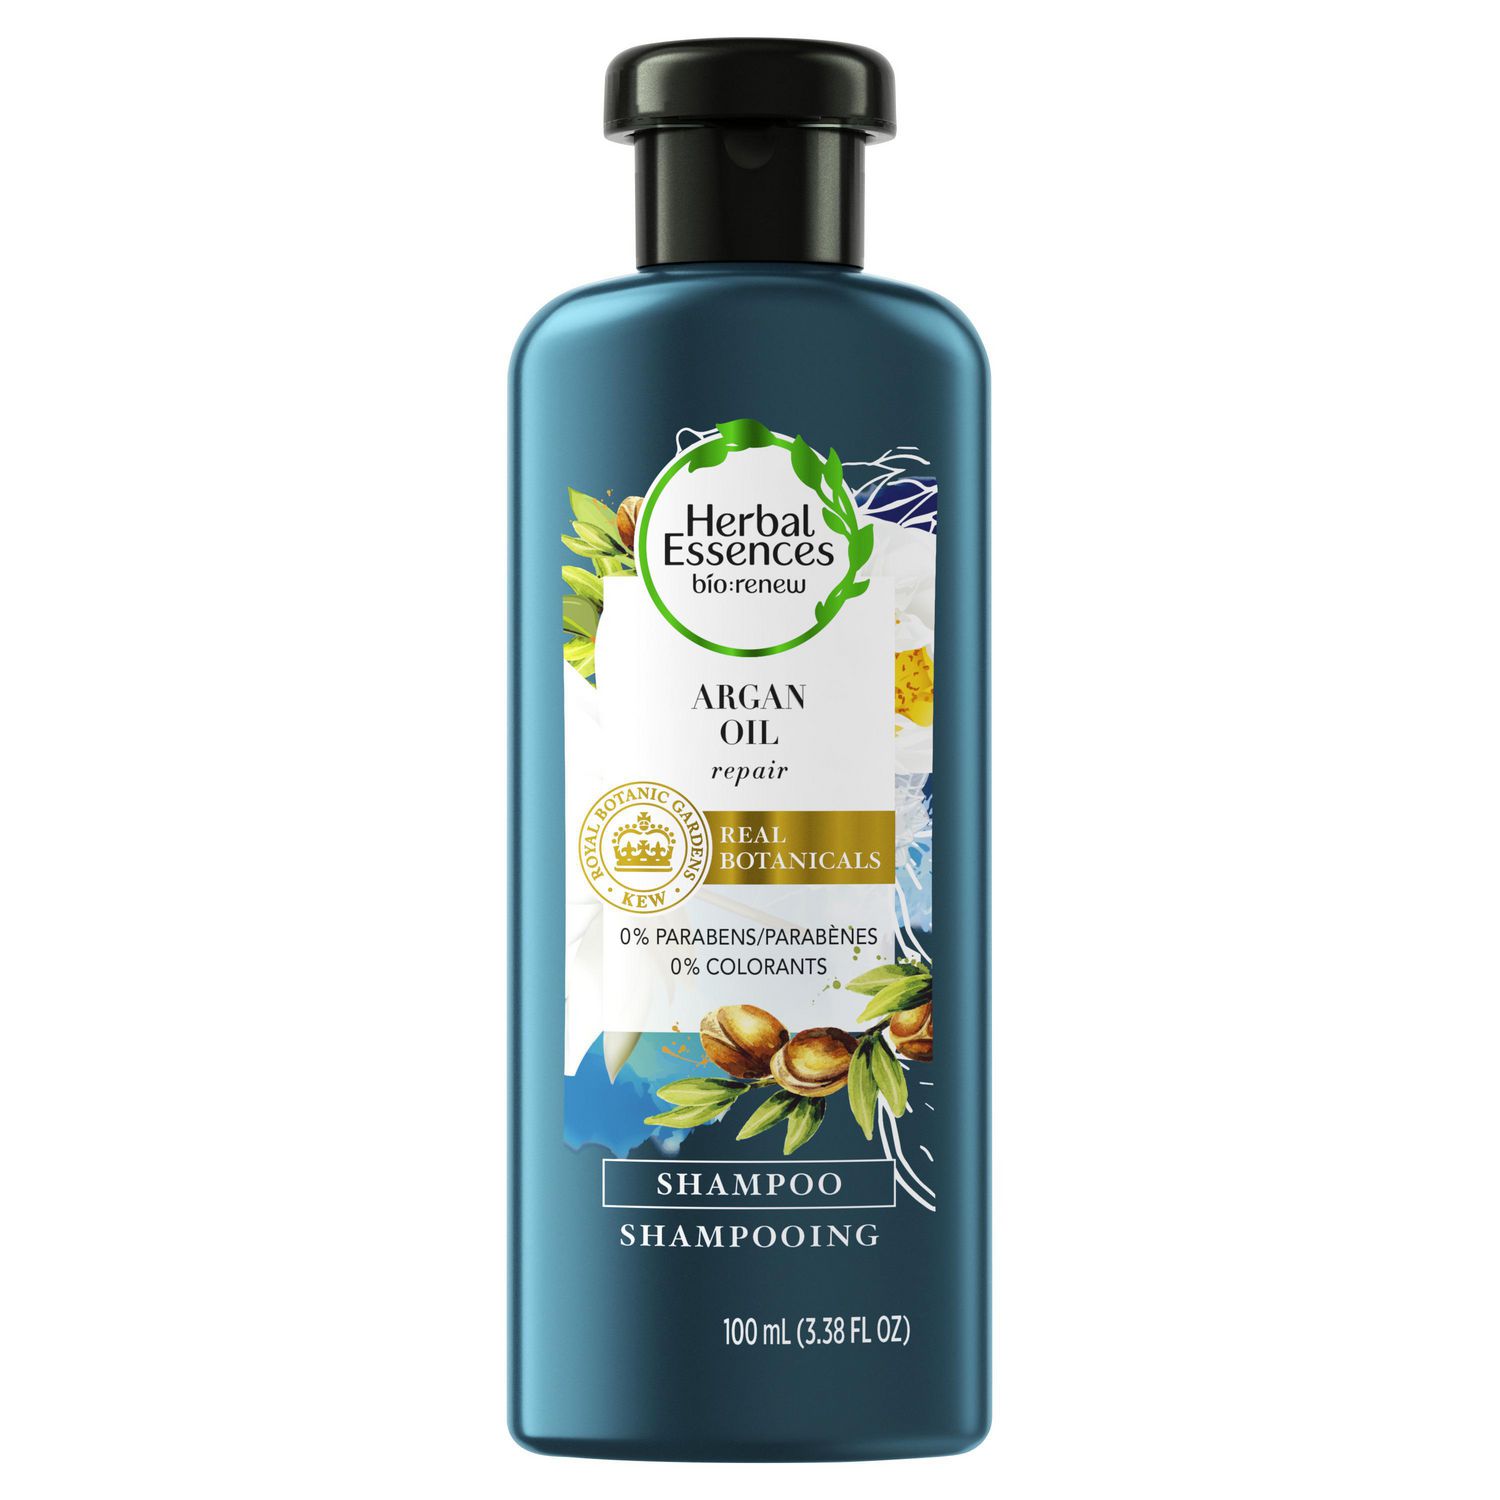 Шампунь эссенс. Herbal Essences шампунь Bio Renew. Шампунь Clairol Herbal Essence Shampoo. Herbal Essences масло для волос арган и алоэ 100мл.